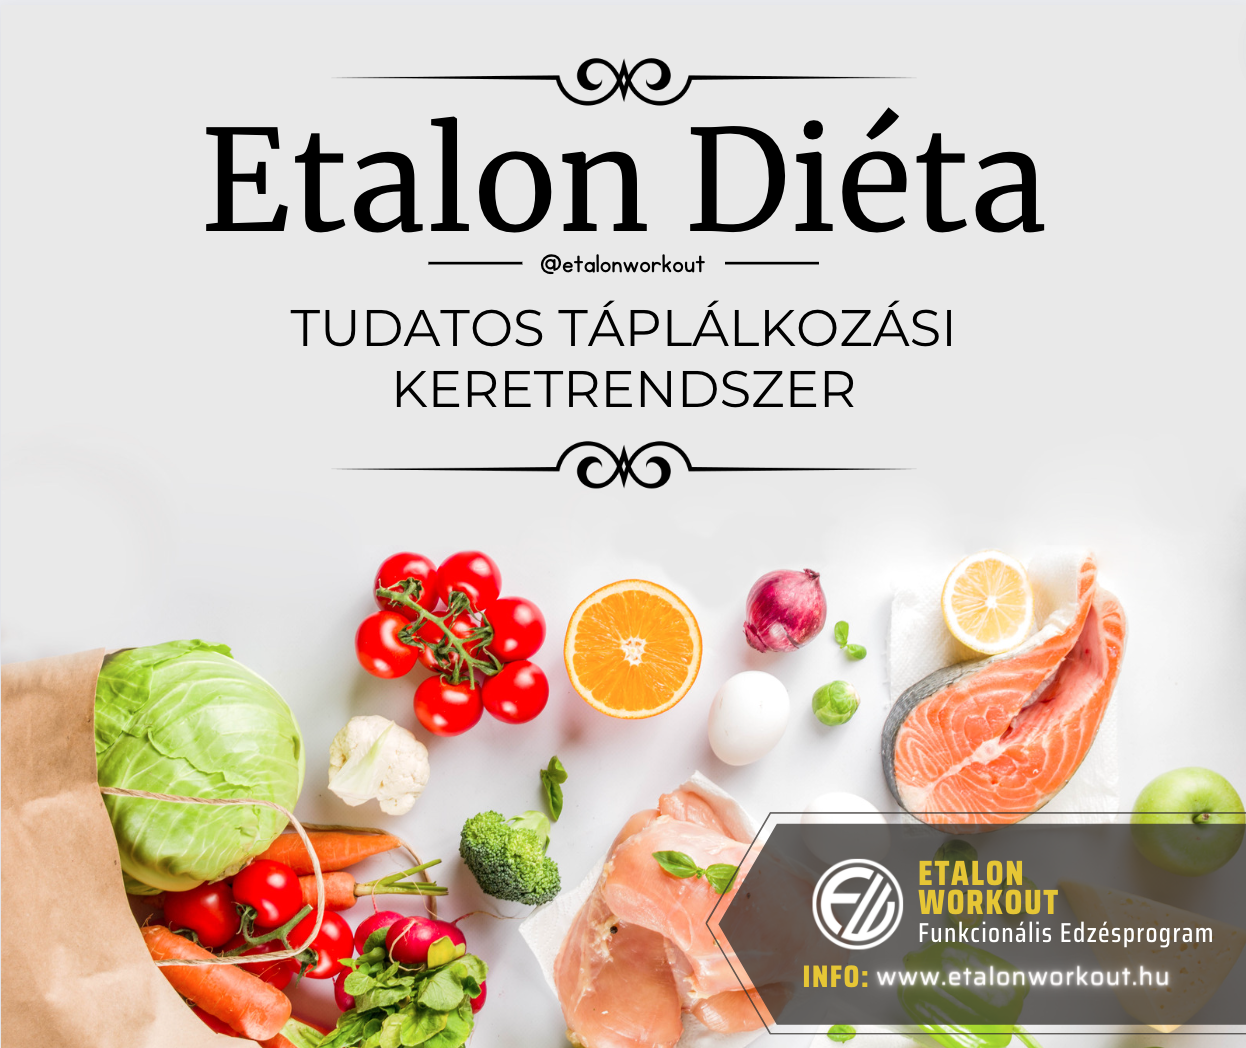 Etalon Diéta - Tudatos Táplálkozási Keretrendszer